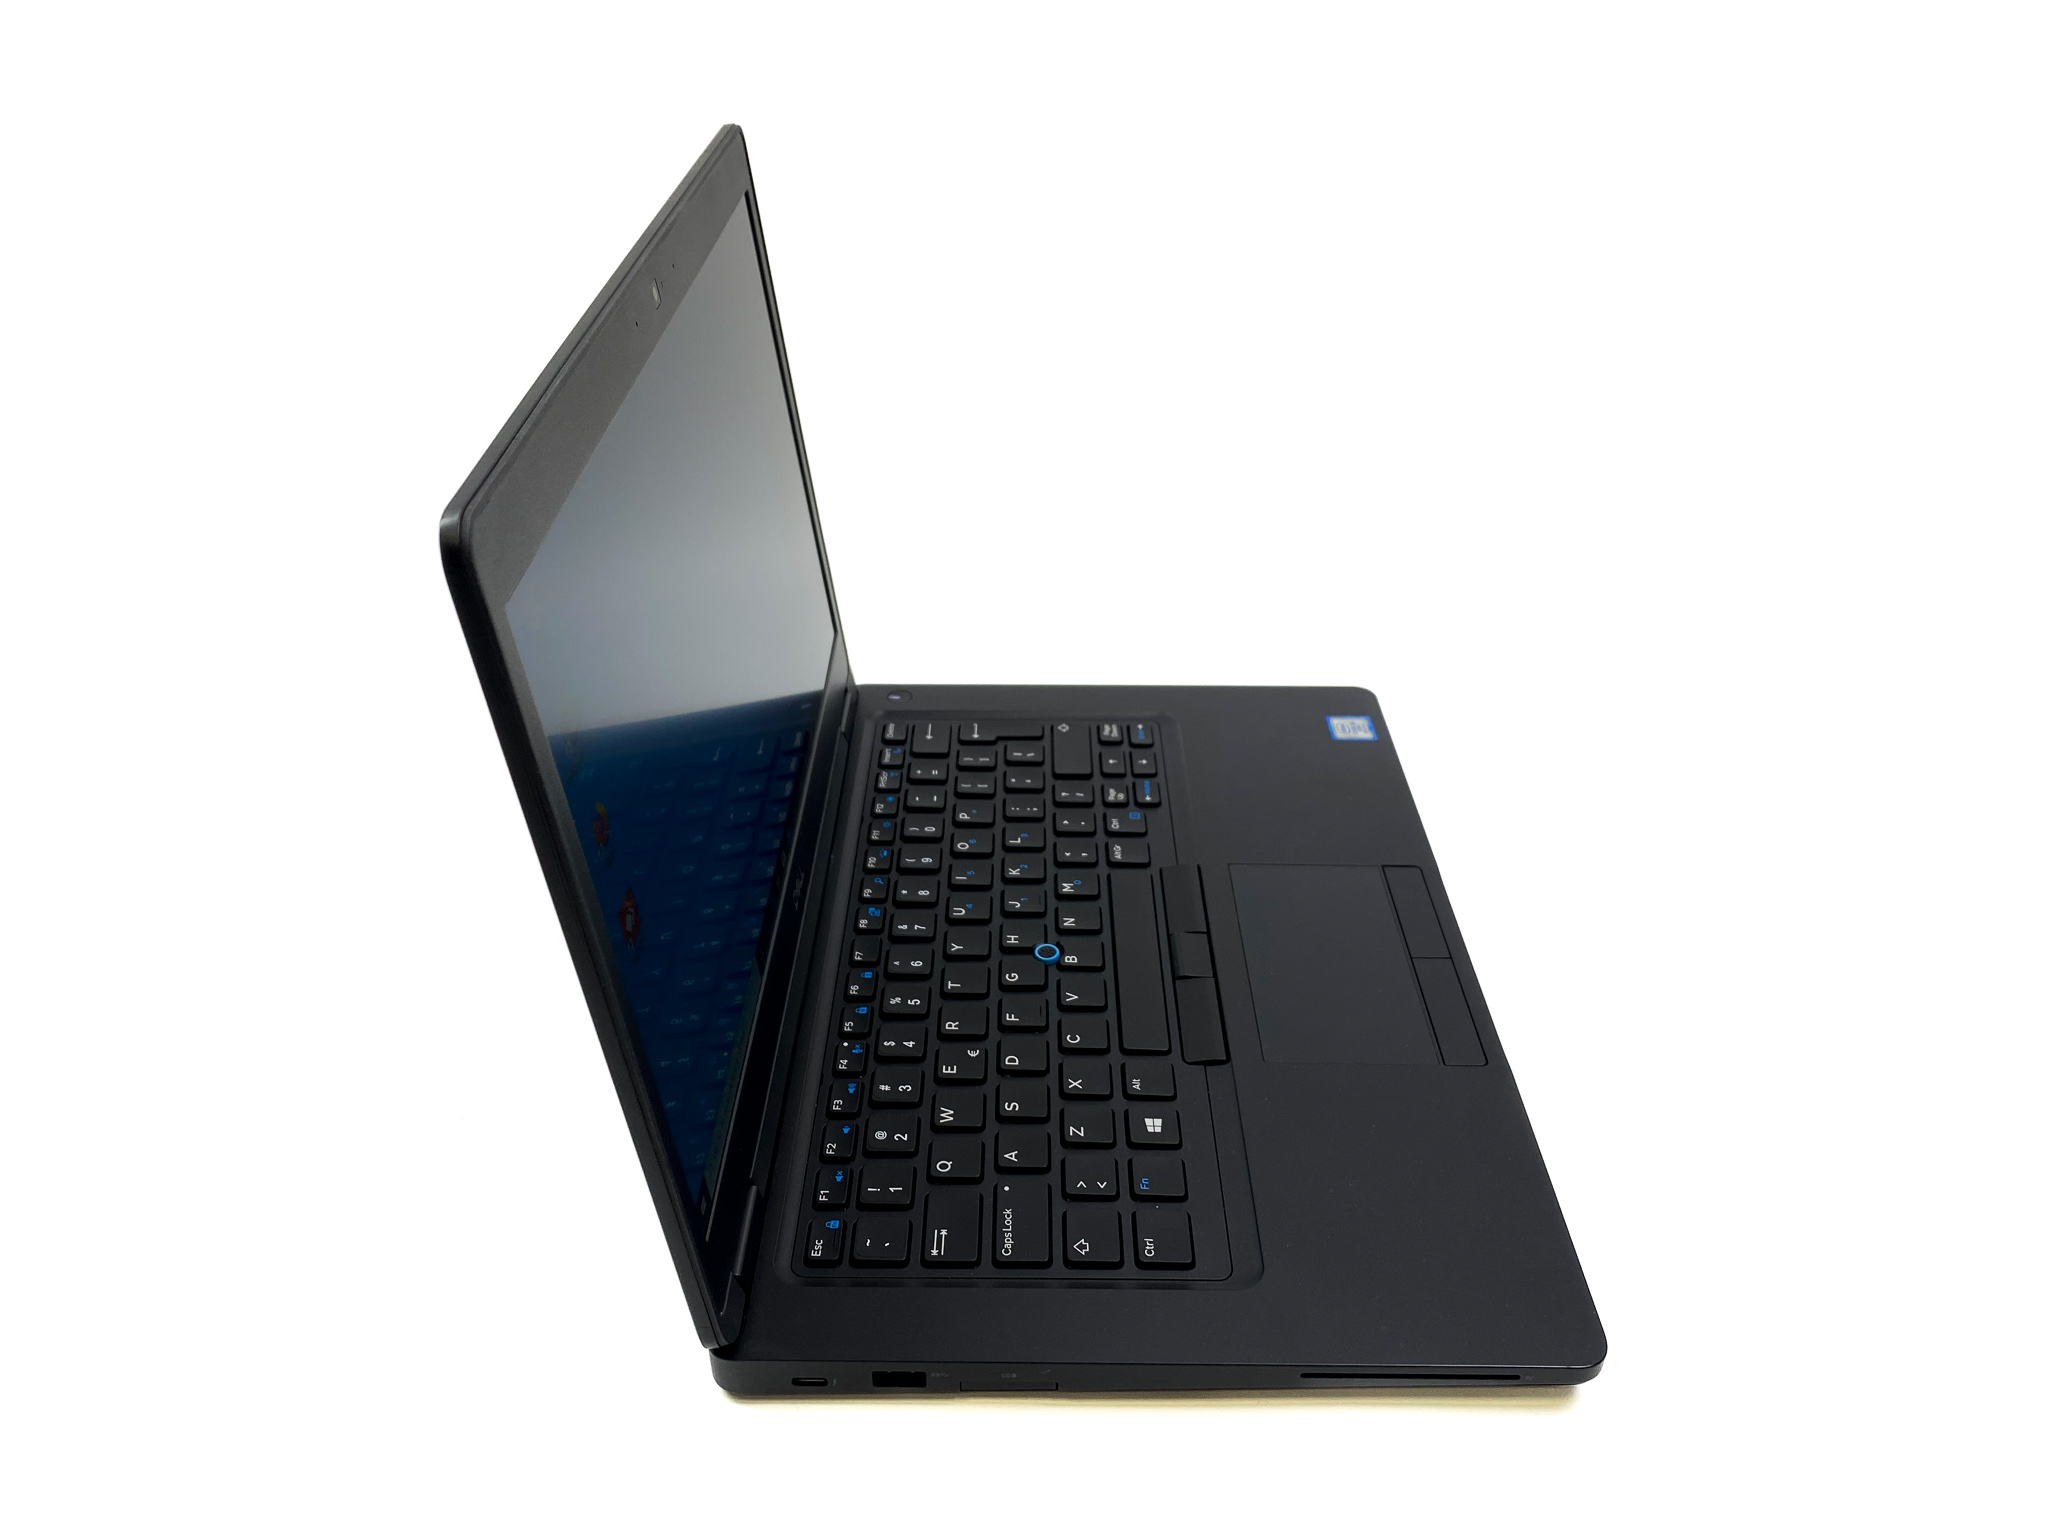 Dell Latitude 5490 - idealny laptop do pracy! Zainwestuj w swój komfort i wydajność - wybierz Dell Latitude 5490!